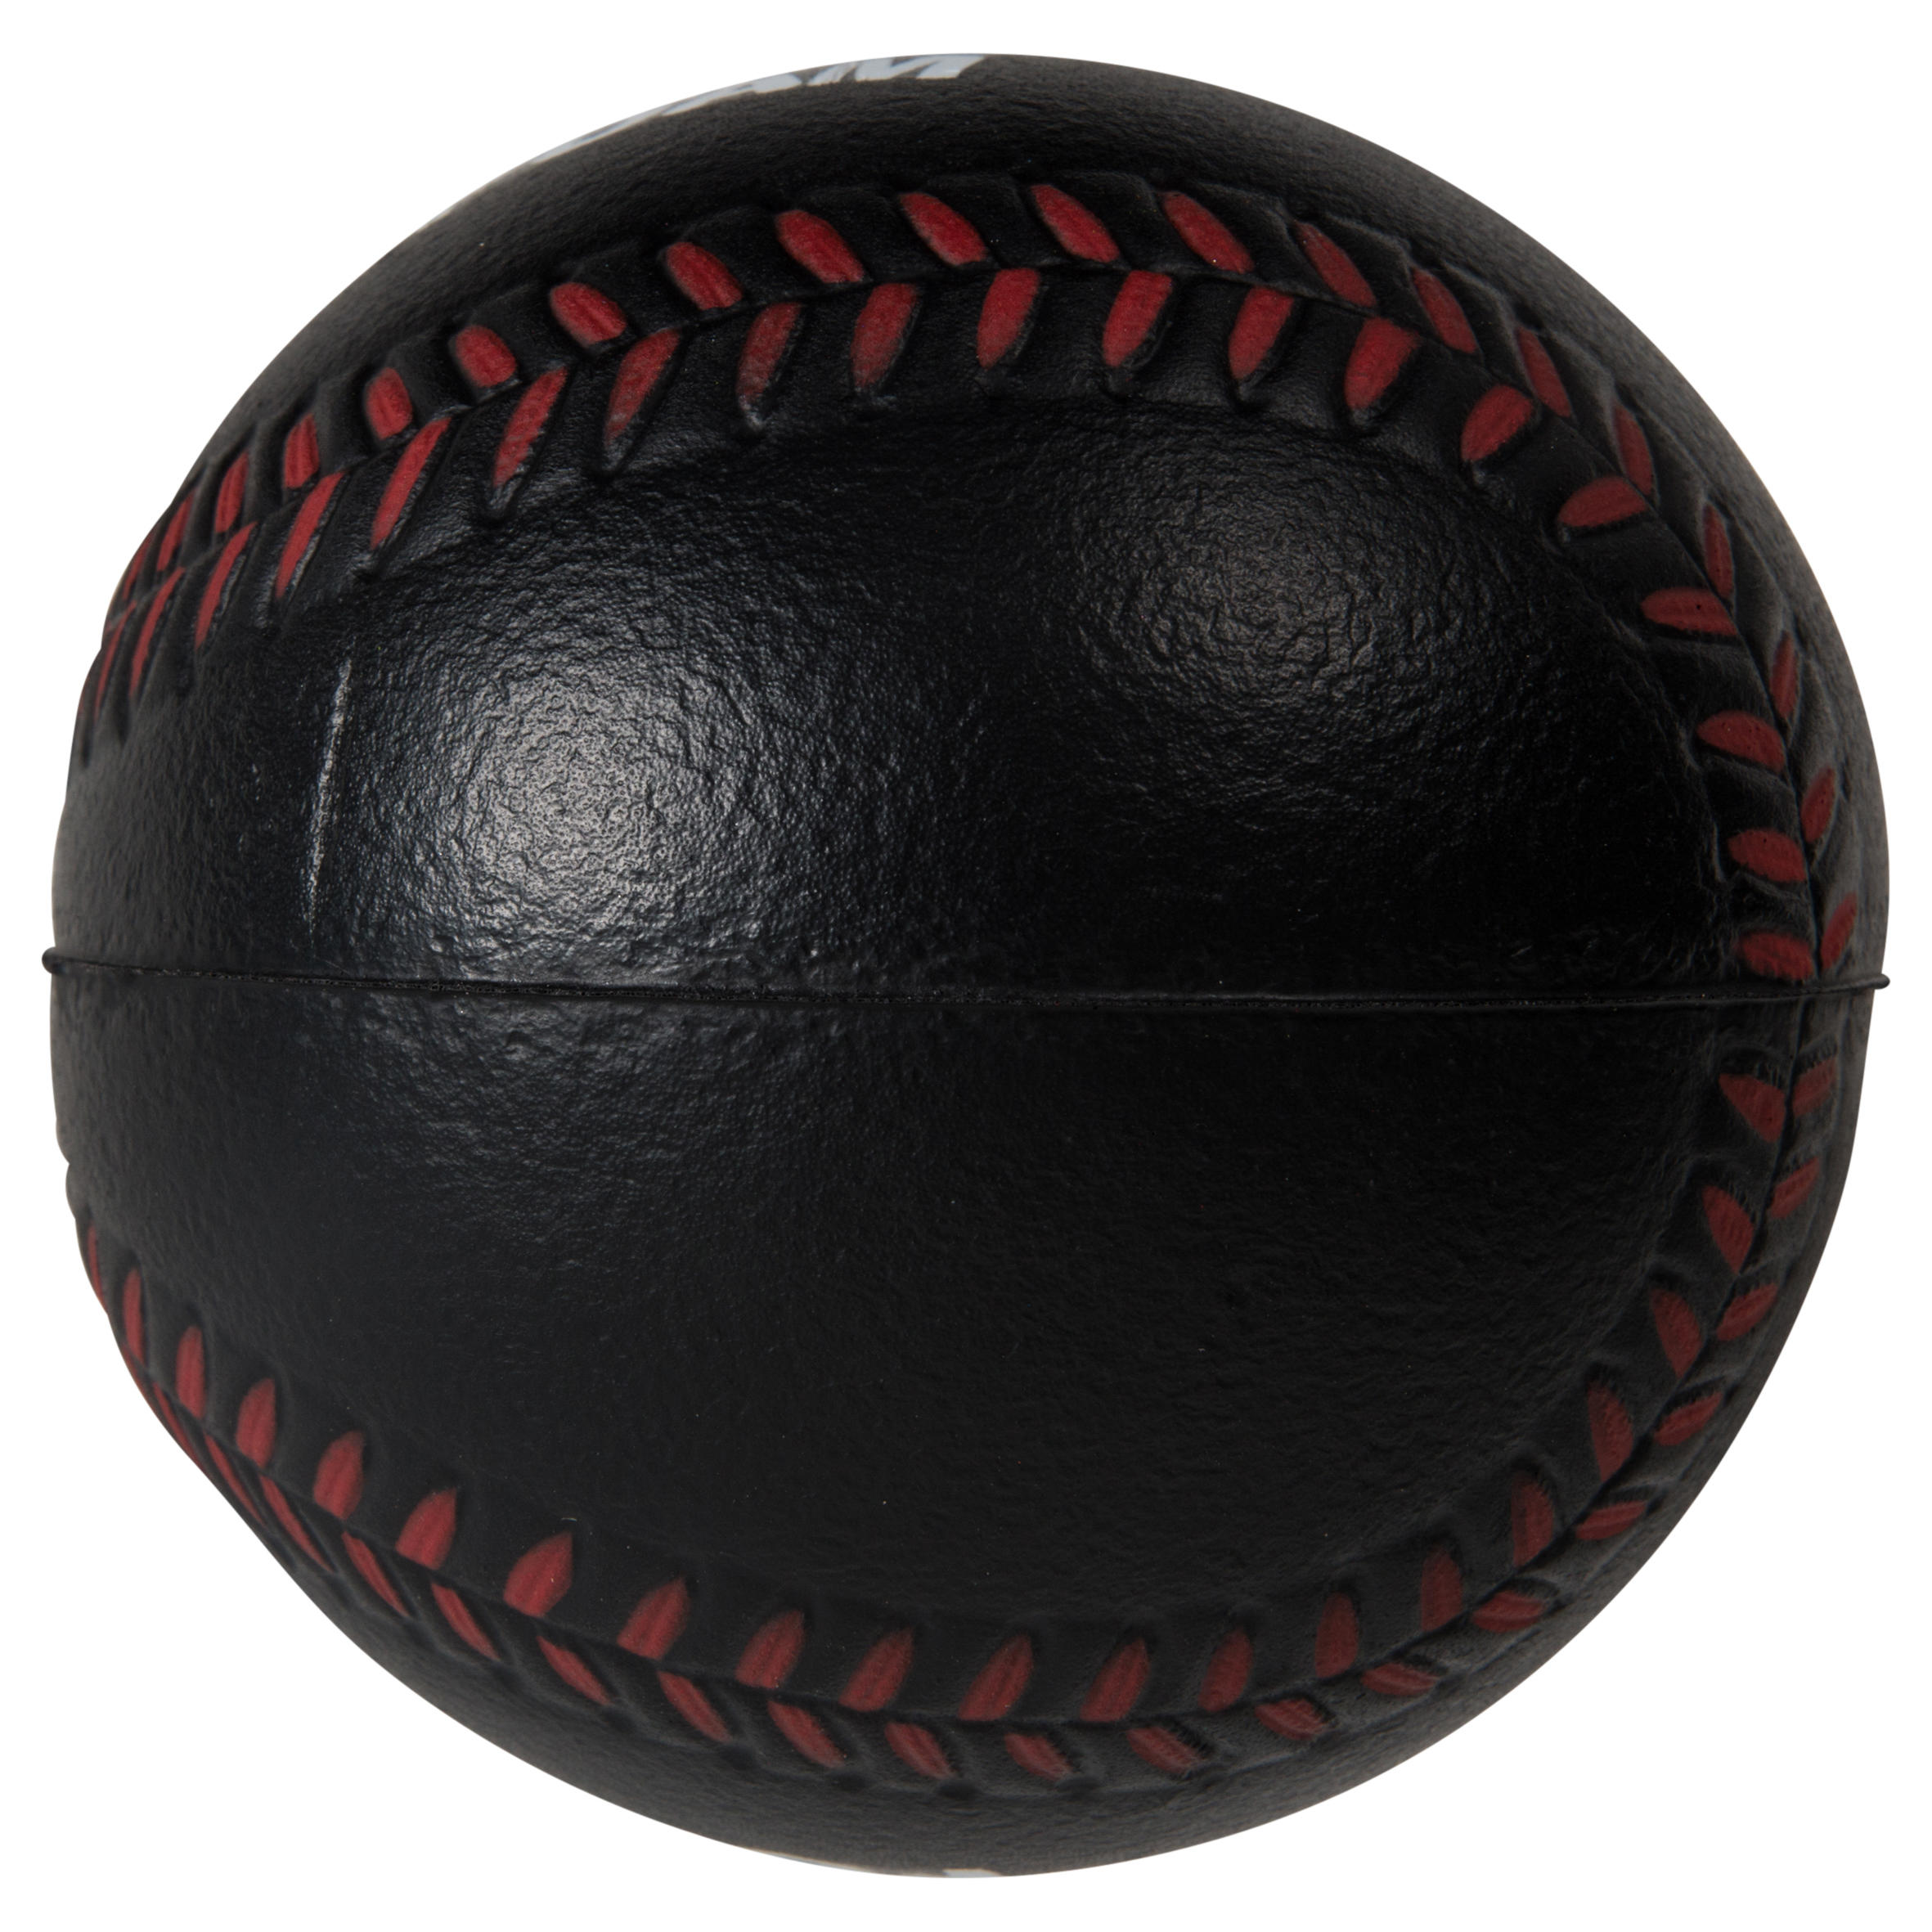 Foam Baseball Ball - BA 100 - KIPSTA